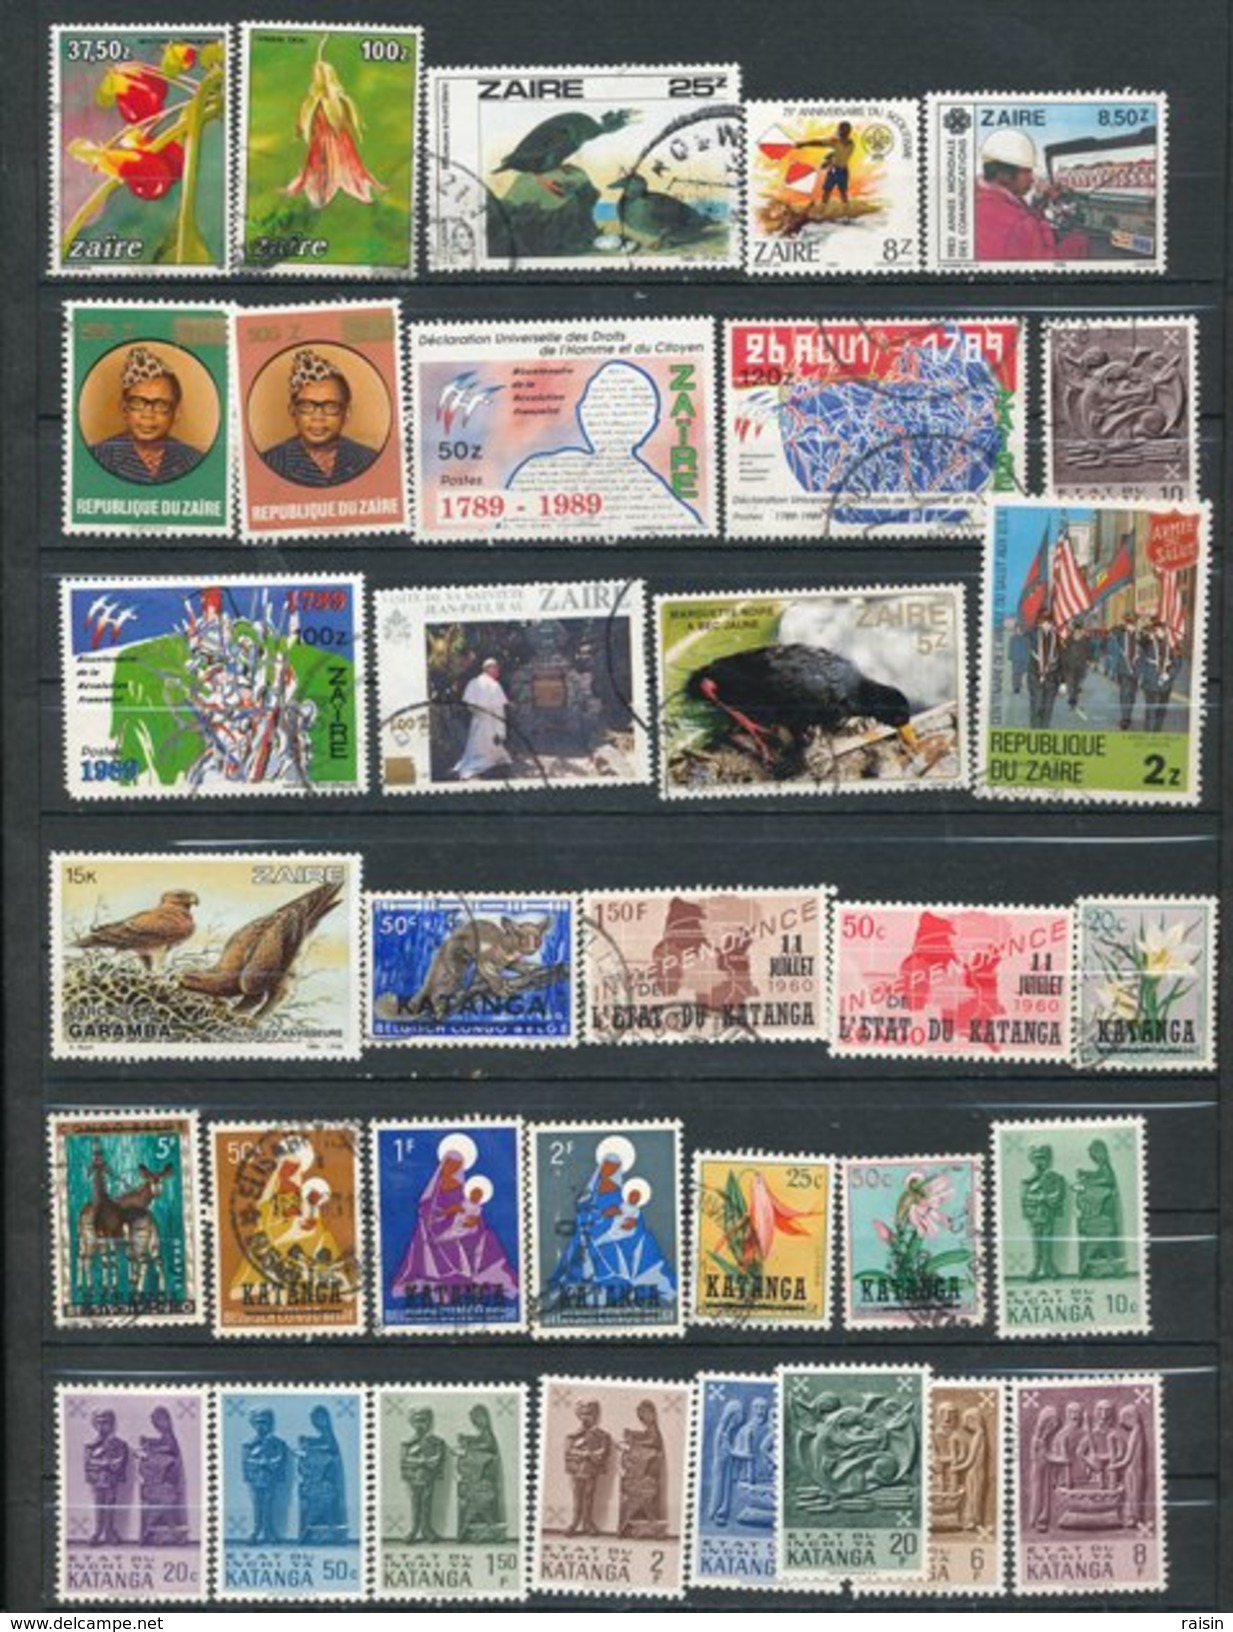 Congo Zaïre Petite collection lot de plus de 200 timbres différents